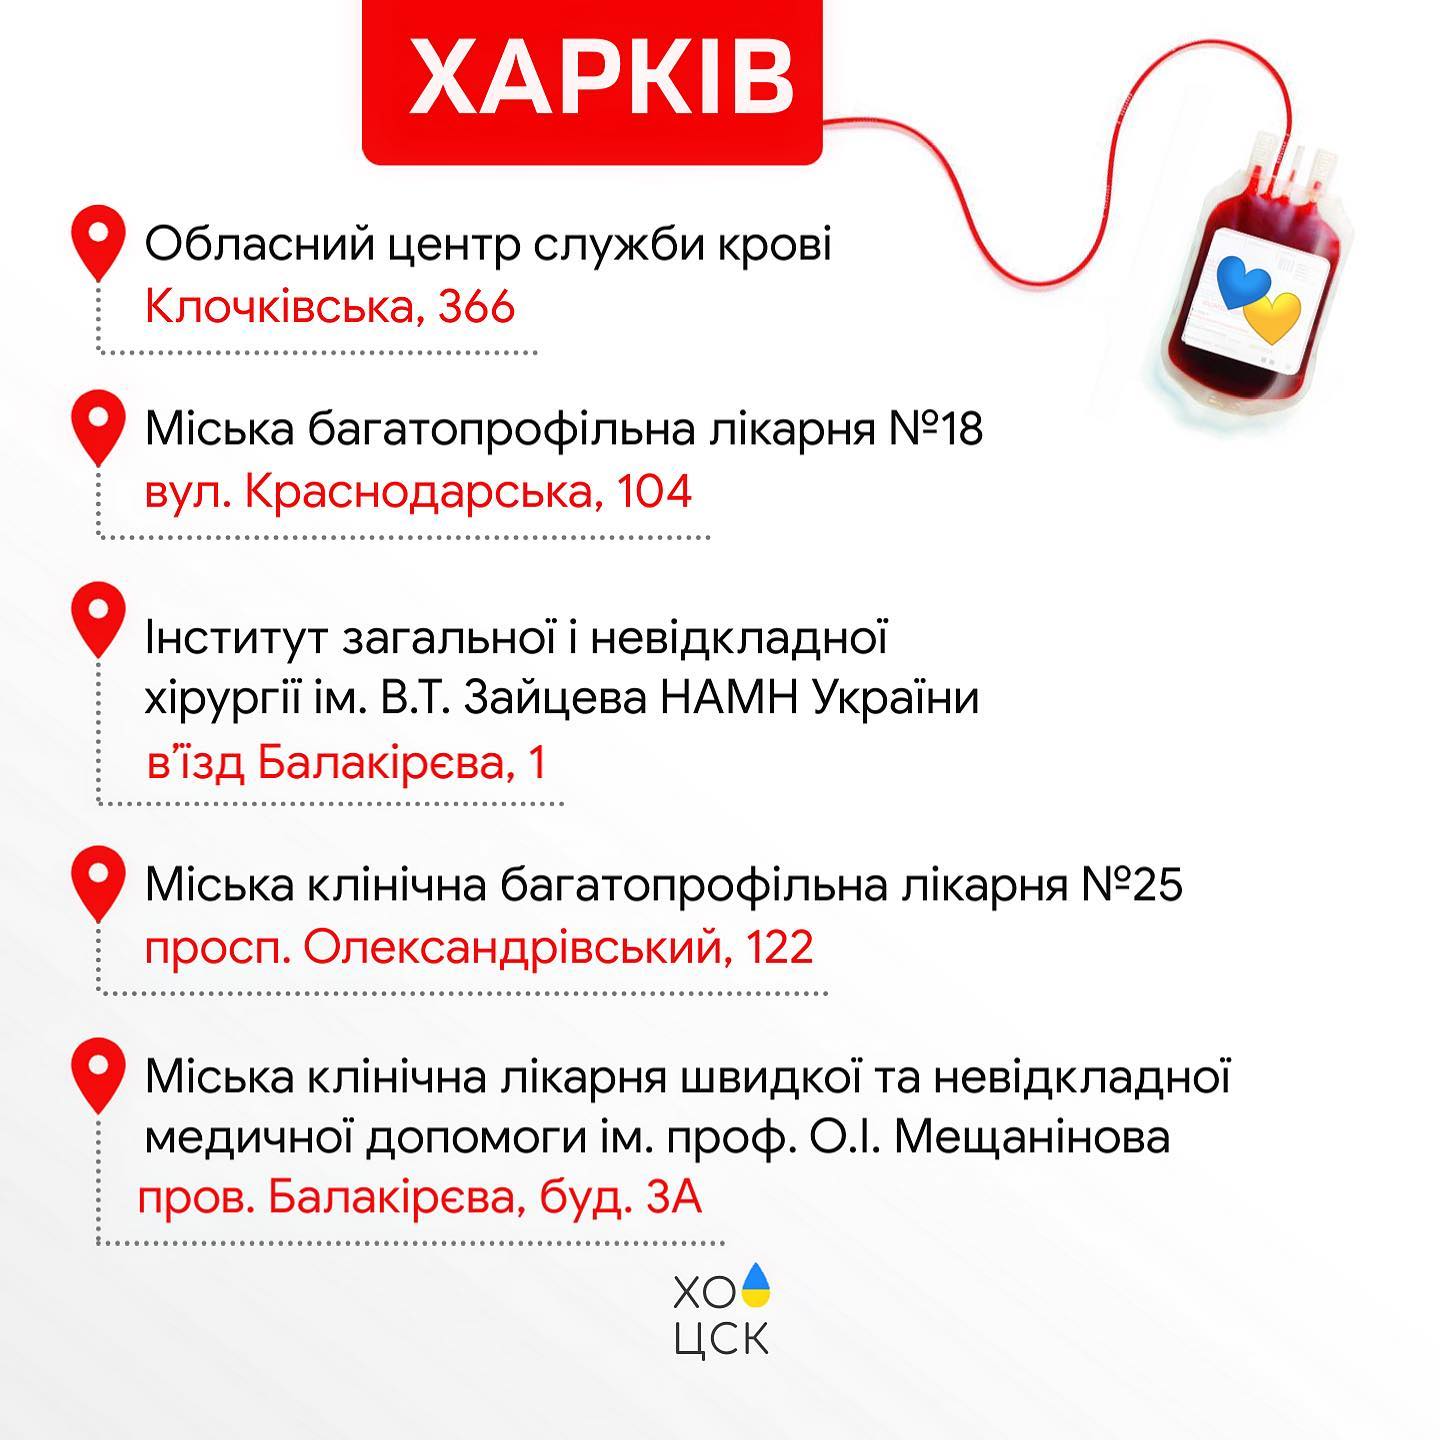 Графика: Харьковский областной центр службы крови